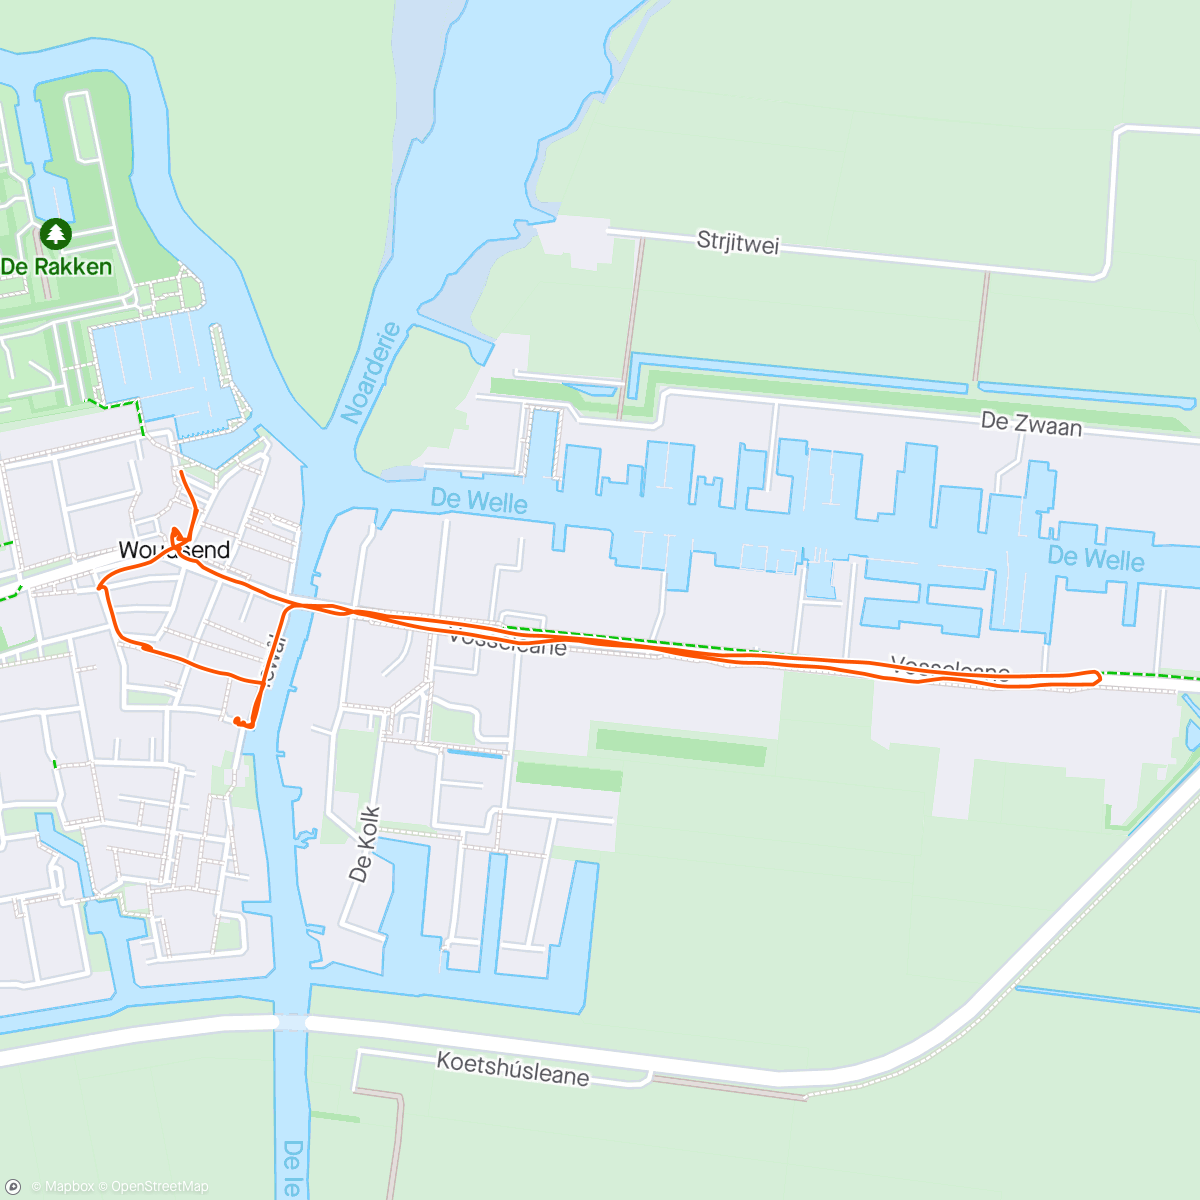 「Woudsend Schifstour - Nederlands」活動的地圖